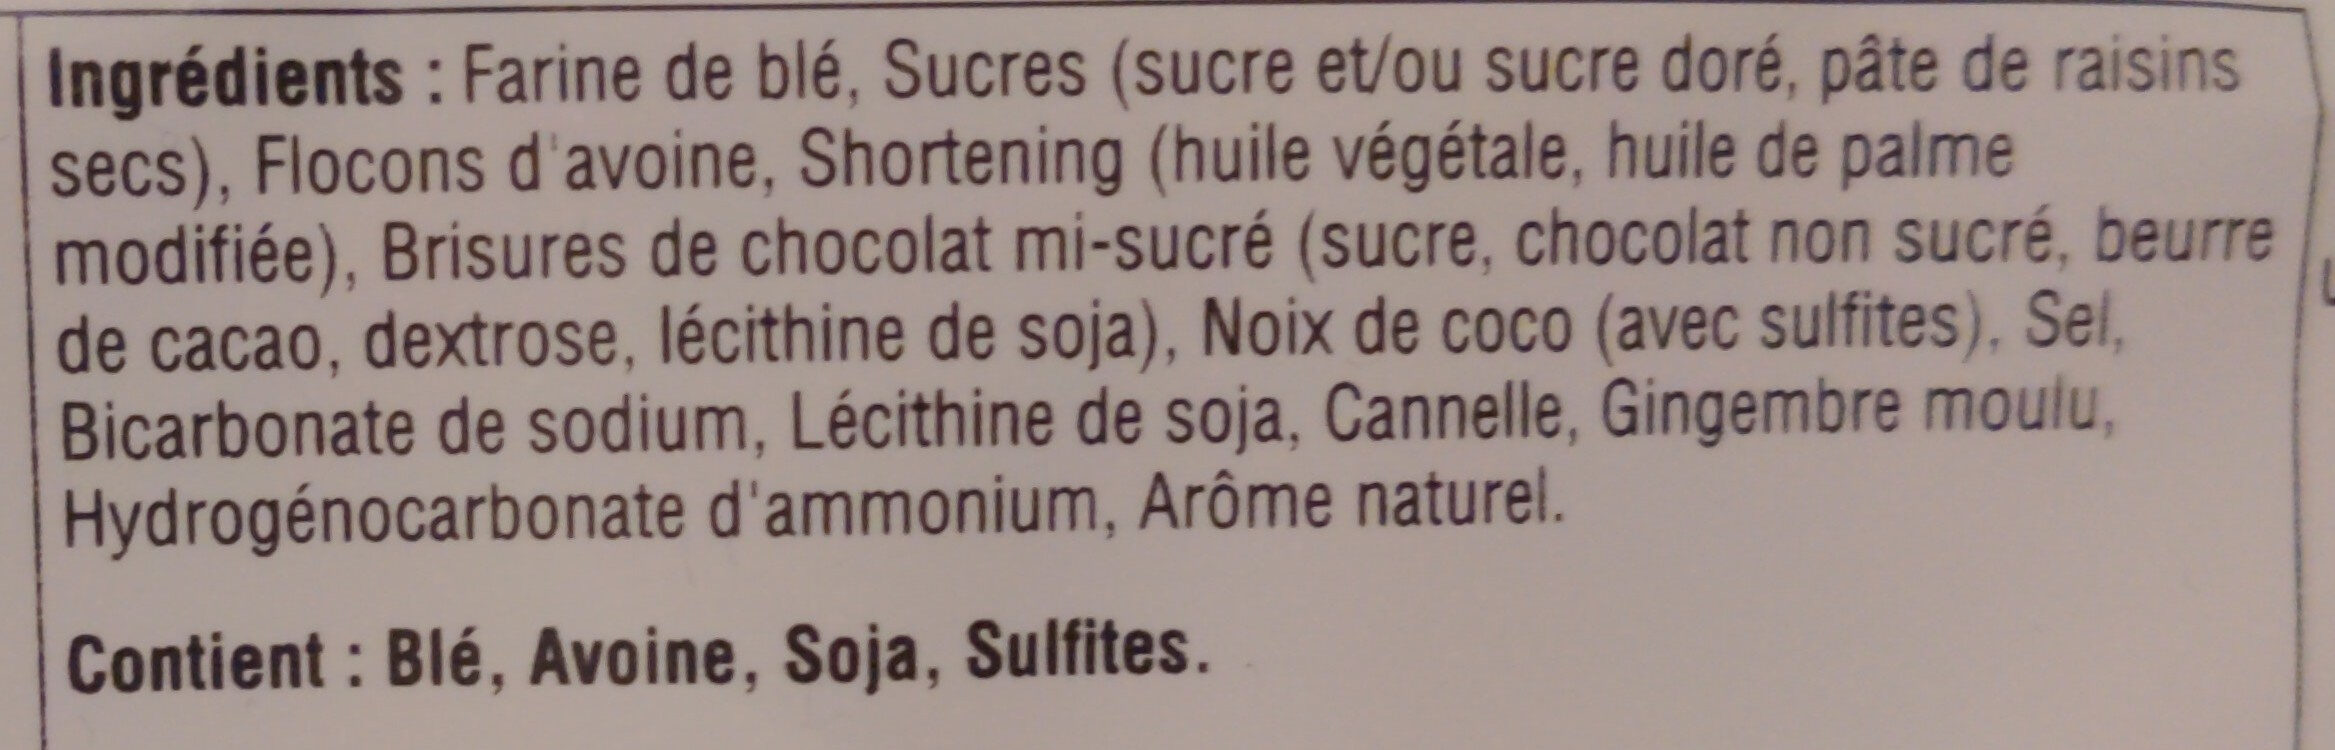 Farine d'avoine et brisure de chocolat - Ingrédients - en